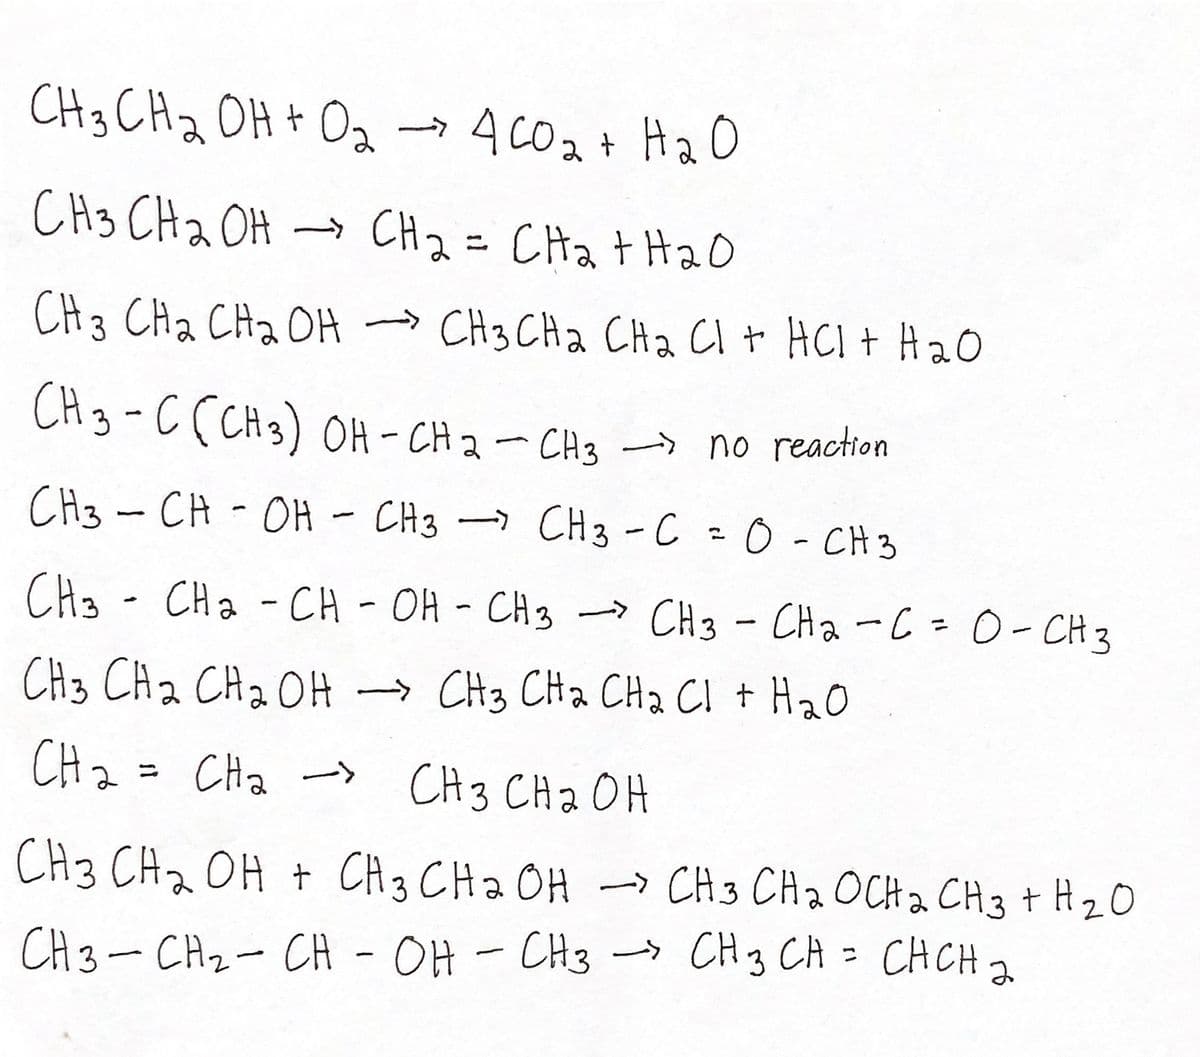 CH3 CHa OH + Oa→
4C02+ HaO
CH3 CHa OH → CH 2= CHa t Hao
CH 3 CHa CHa OH
» CH3 CHa CHa Cl t HCI + Ha0
→
CH3-C (CH3) OH - CH 2- CH3 no reaction
CH3 -CH-OH
CH3 - CH3 -C0-CH3
CH3 - CHa - CH - OH - CH3 -> CH3- CHa-C=0-CH 3
»CH3
CH3 CH a CH2 OH
→ CH3 CHa CH2 CI + H20
CHz = CHa -s CH3 CHa OH
CH3 CHz OH +
CH 3 CHa OH -> CH3 CH2 OCH a CH3 + H2O
CH3-CHz- CH
- OH - CH3 CH3 CA = CHCH2
